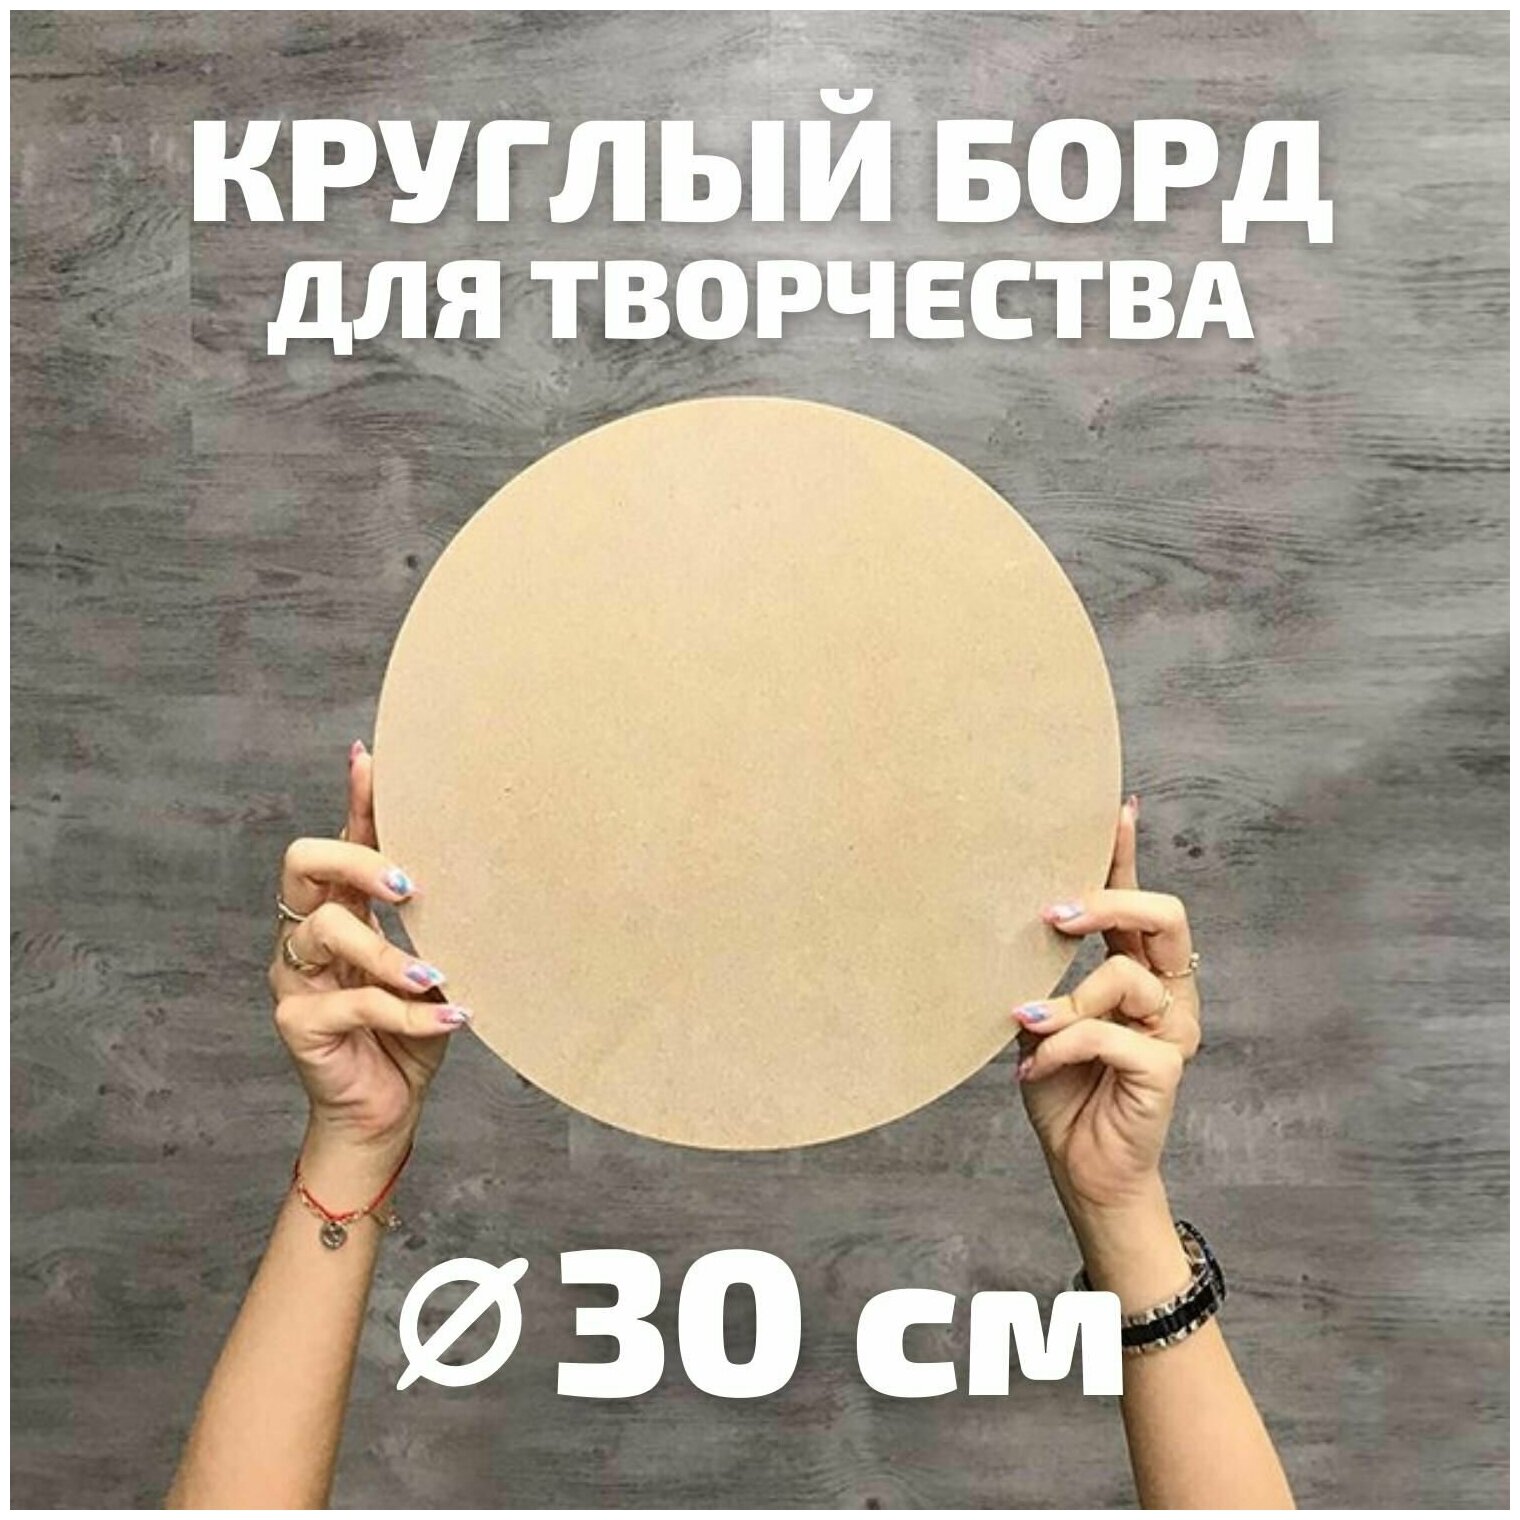 Артборд круглый диаметром 30 см для творчества